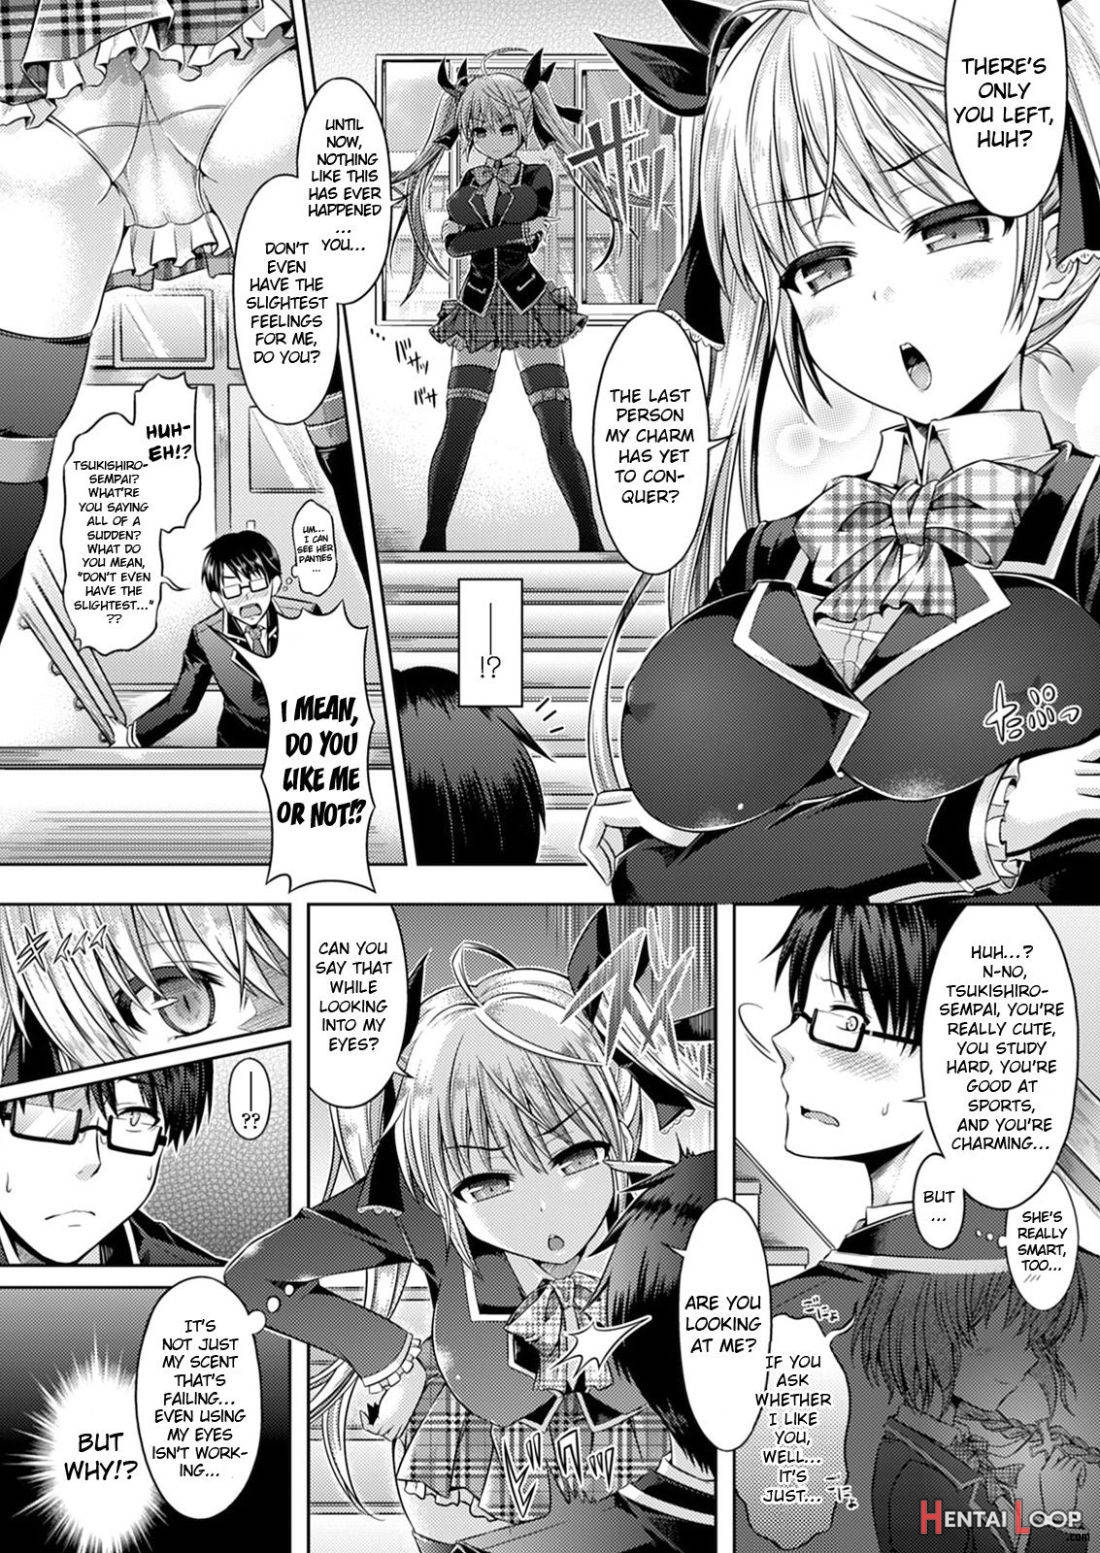 Kimi-iro Days # 1 page 2